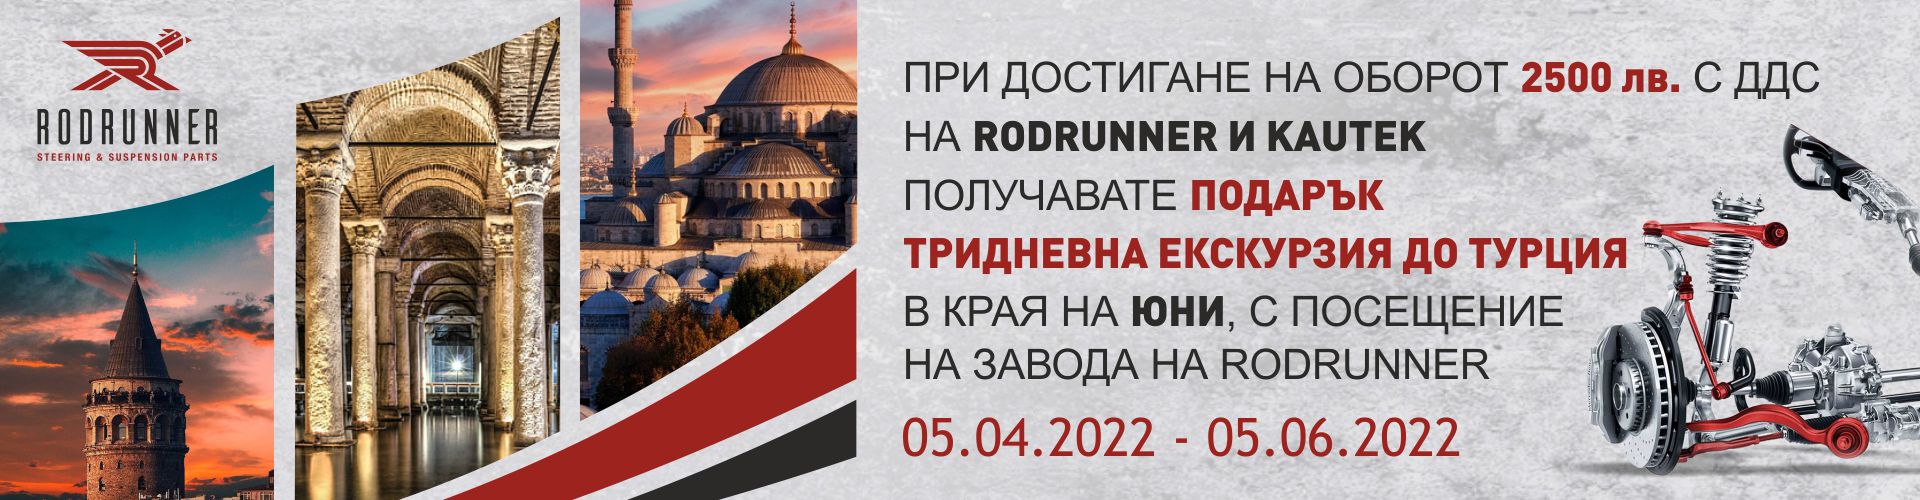 promo_rodrunner_05.04.2022-05.06.2022_banner.jpg